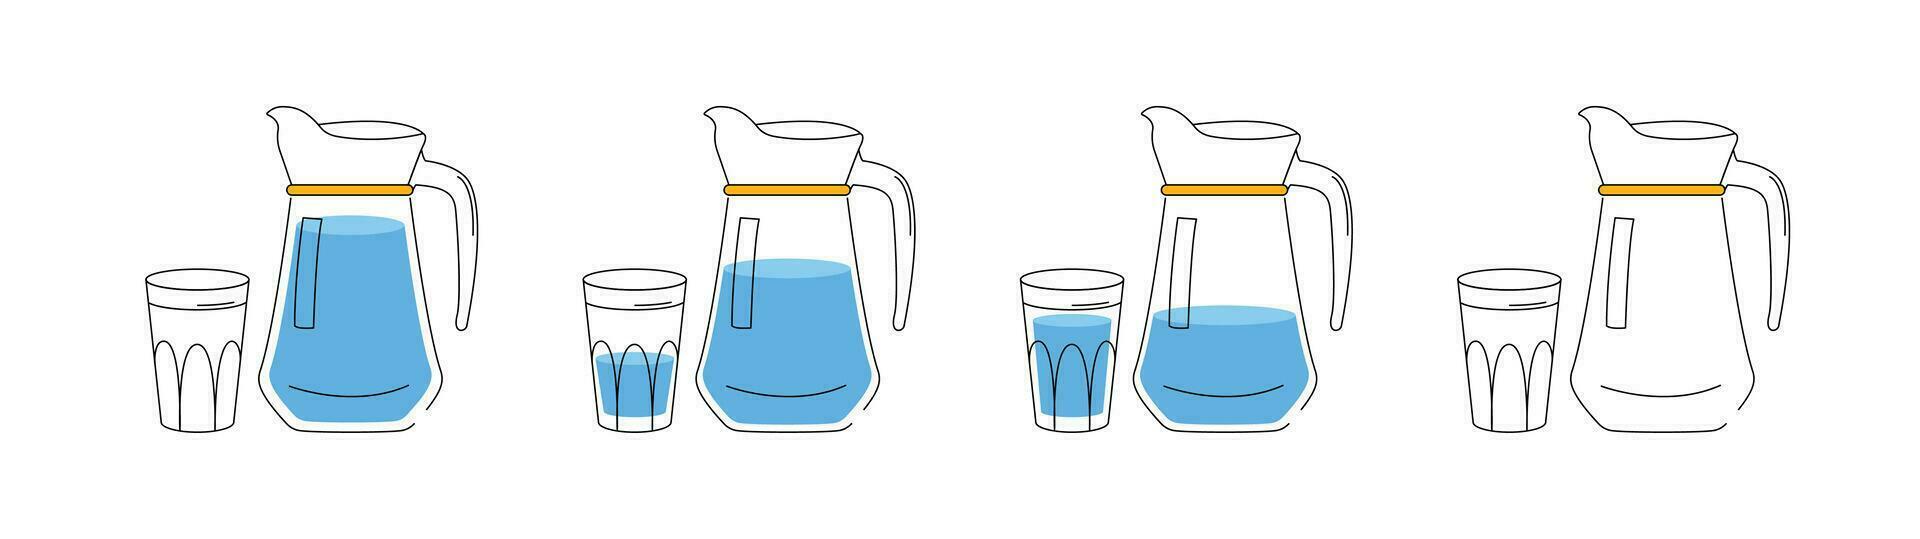 water balans concept. de werkwijze van drinken water. reeks van 4 afbeeldingen. een kruik en een glas van water. de concept van drinken genoeg water gedurende de dag. illustratie in een vlak stijl. vector